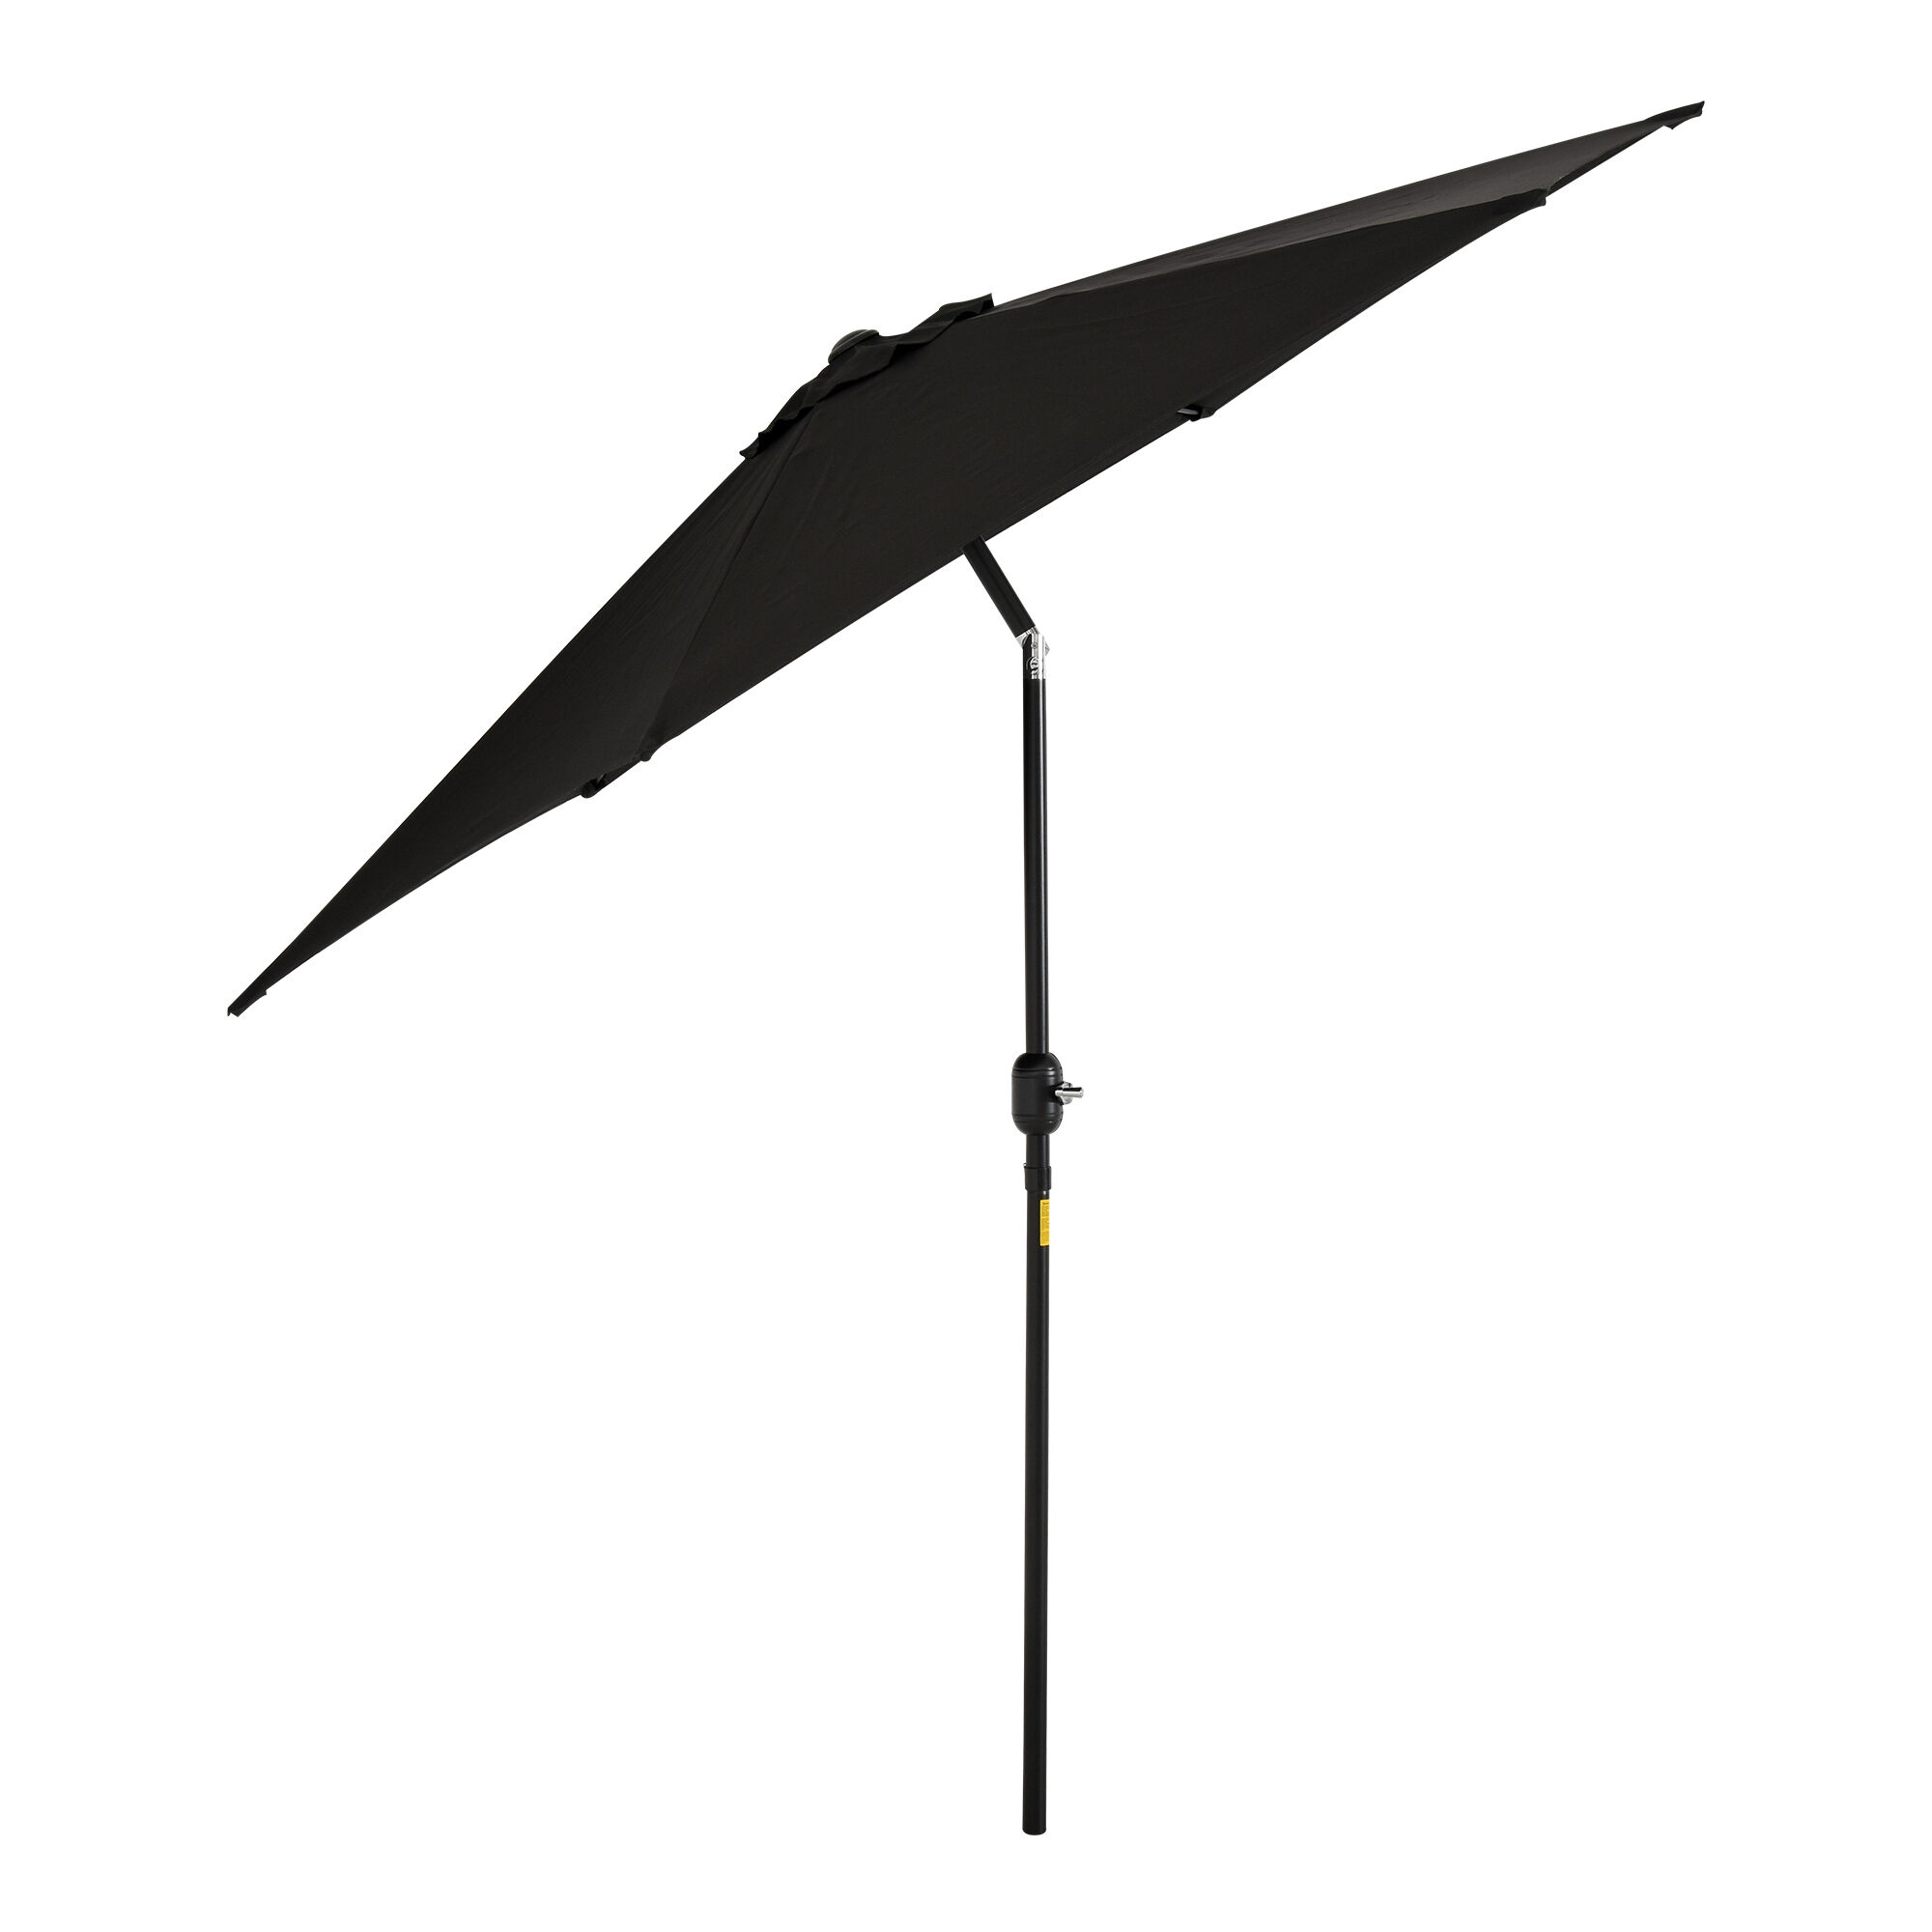 Outsunny Outdoor Garden Parasol with Tilt and Crank Mechanism, 2.7M Sun Shade Umbrella, Aluminium Frame, Black